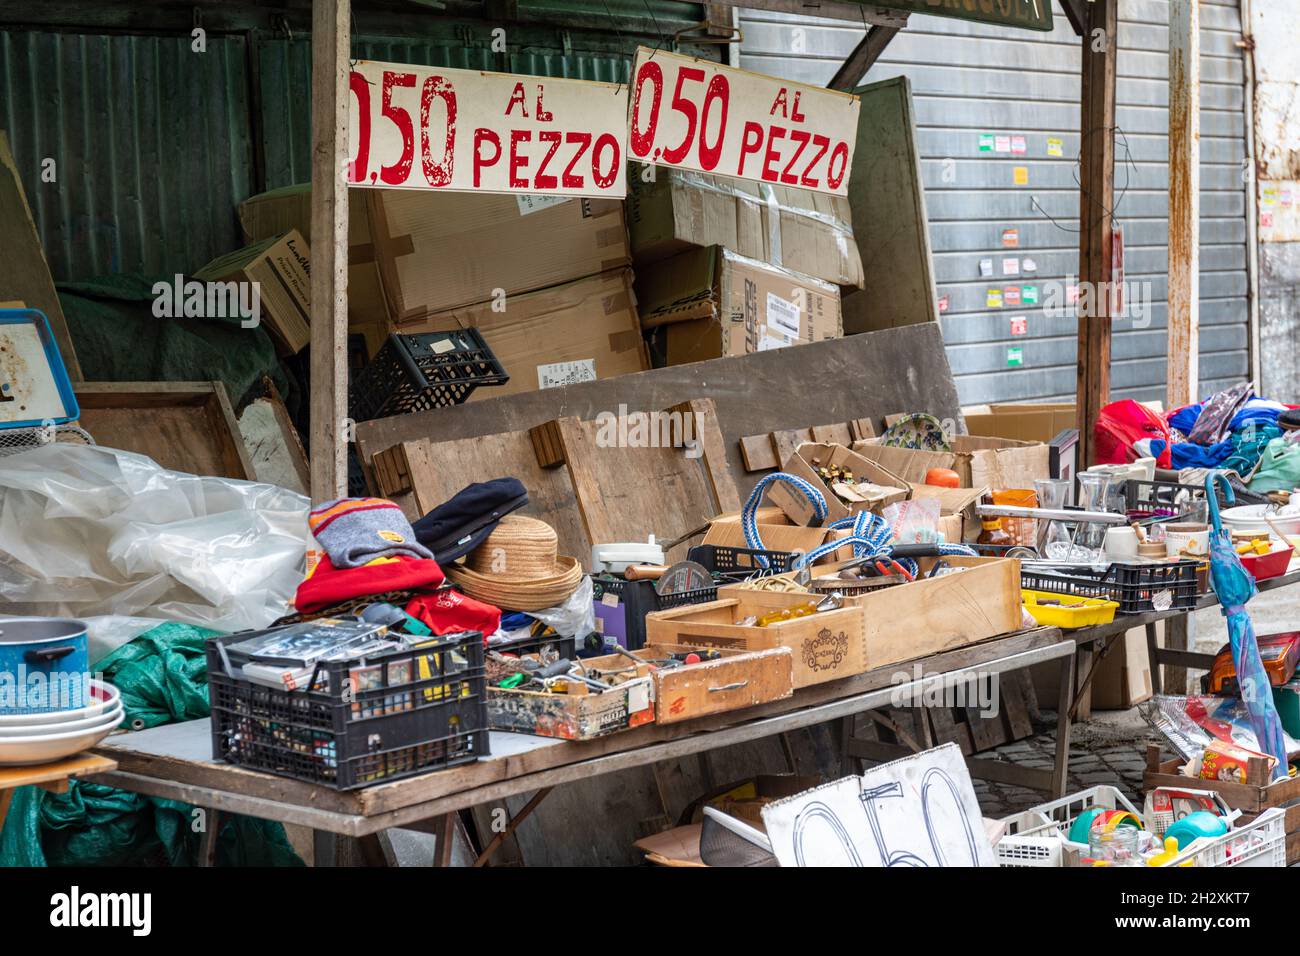 0,5 al pezzo. Verschiedene Artikel zum Verkauf für 50 Cent bei Clivio Portuense im Stadtteil Trastevere in Rom, Italien. Stockfoto